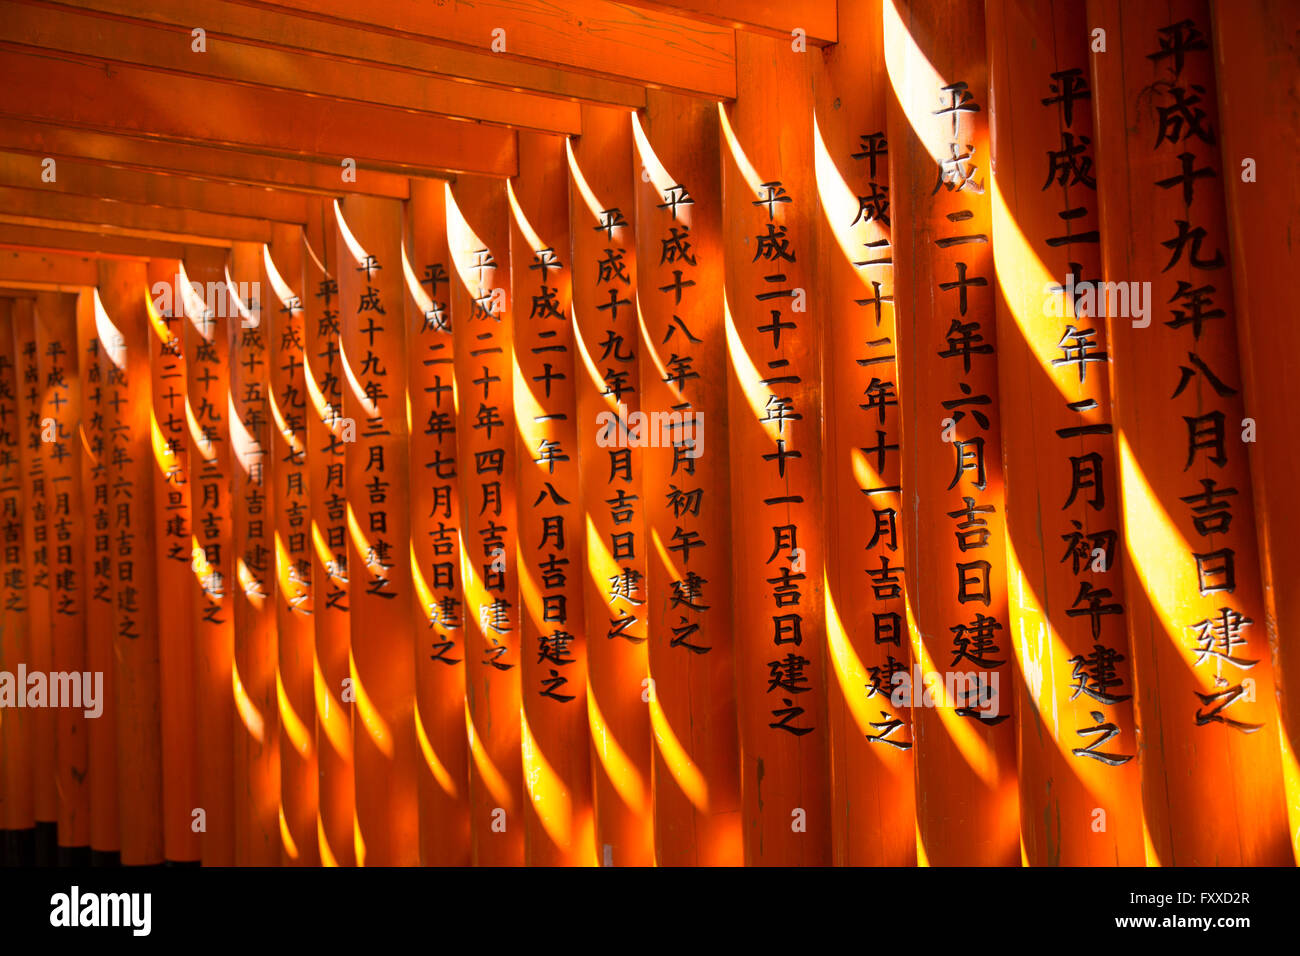 Lumière tombe sur les colonnes de l'Sanctuaire Fushimi Inari, qui sont inscrits avec des caractères japonais. Banque D'Images